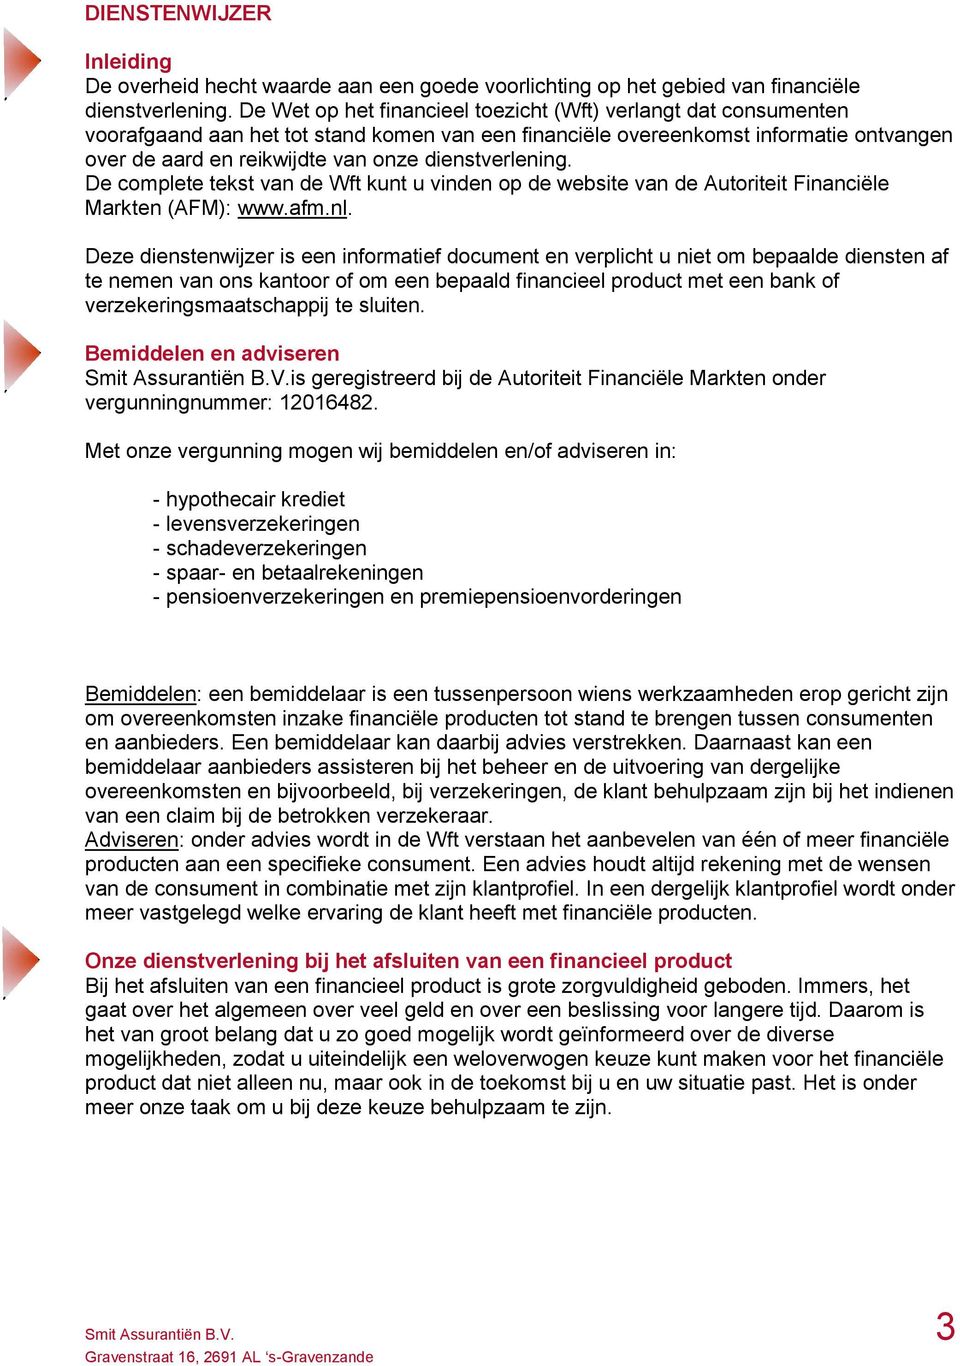 dienstverlening. De complete tekst van de Wft kunt u vinden op de website van de Autoriteit Financiële Markten (AFM): www.afm.nl.